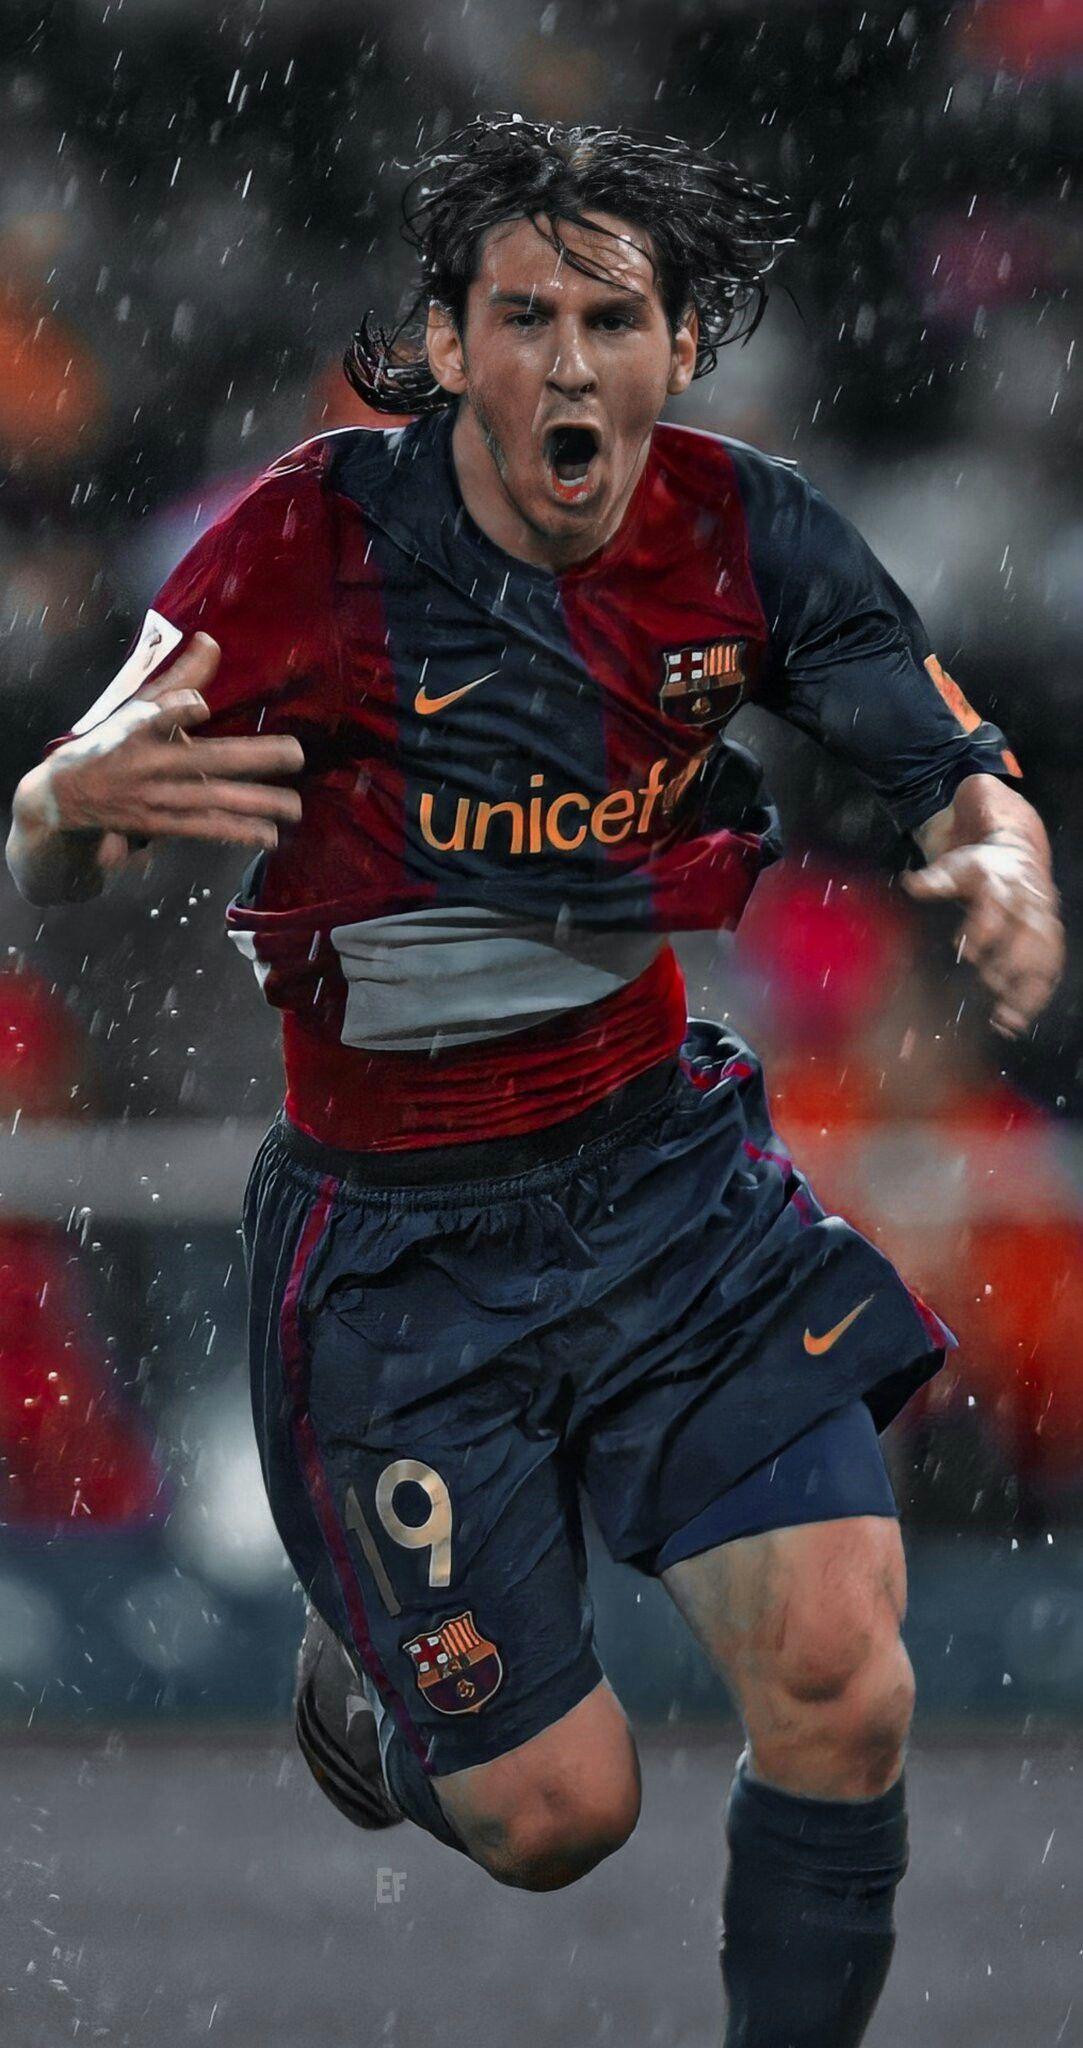 Nhìn thấy sự phát triển của Messi qua từng bức ảnh, và cảm thấy niềm hy vọng rằng bạn cũng sẽ vươn đến thành công như anh ấy.